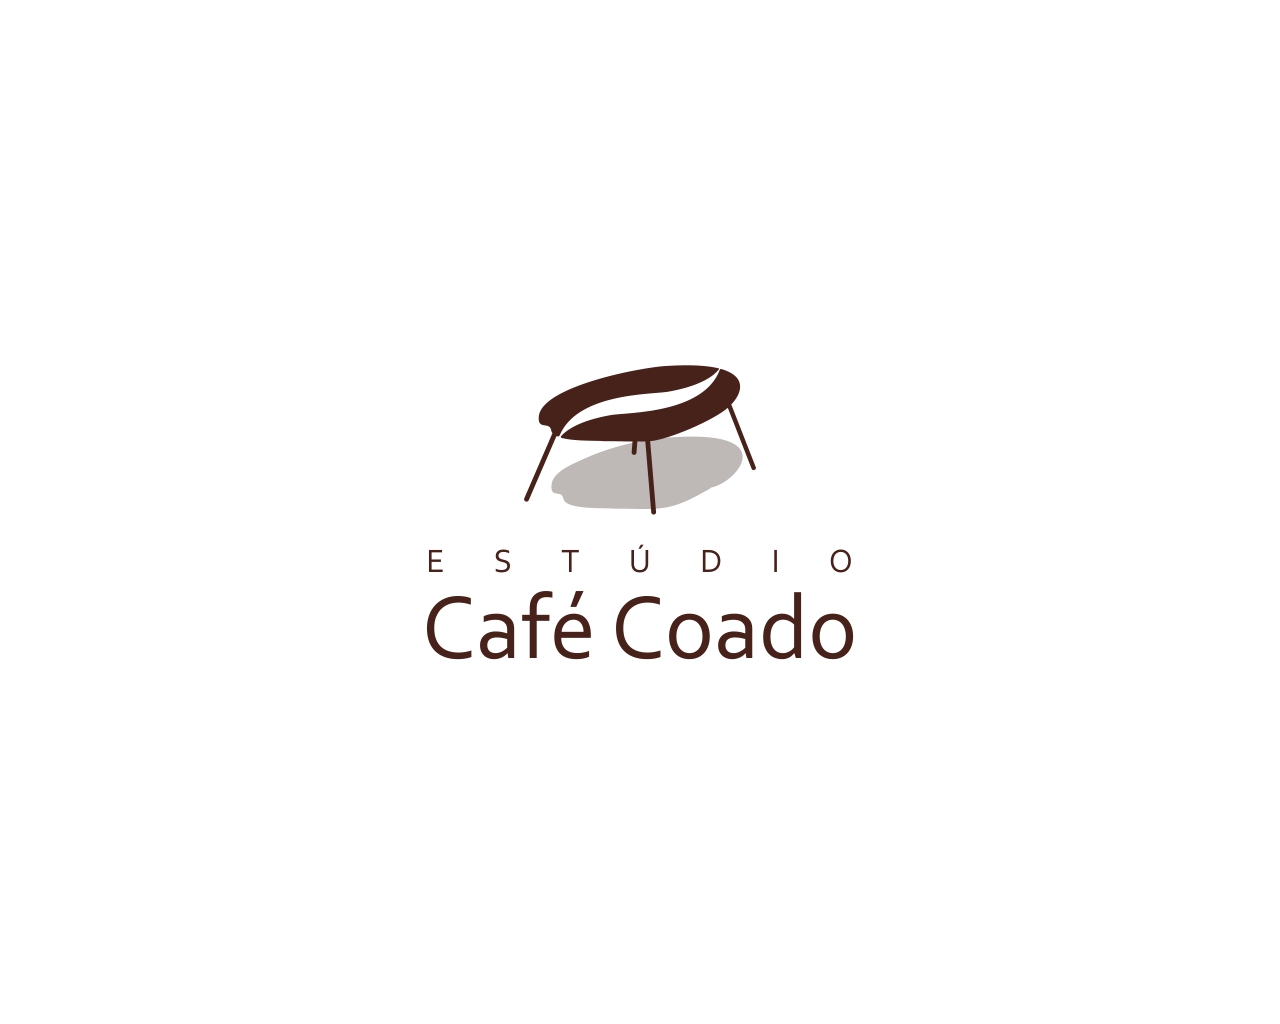 Logo Design entry 1943342 submitted by akari to the Logo Design for Estúdio Café Coado run by Camila